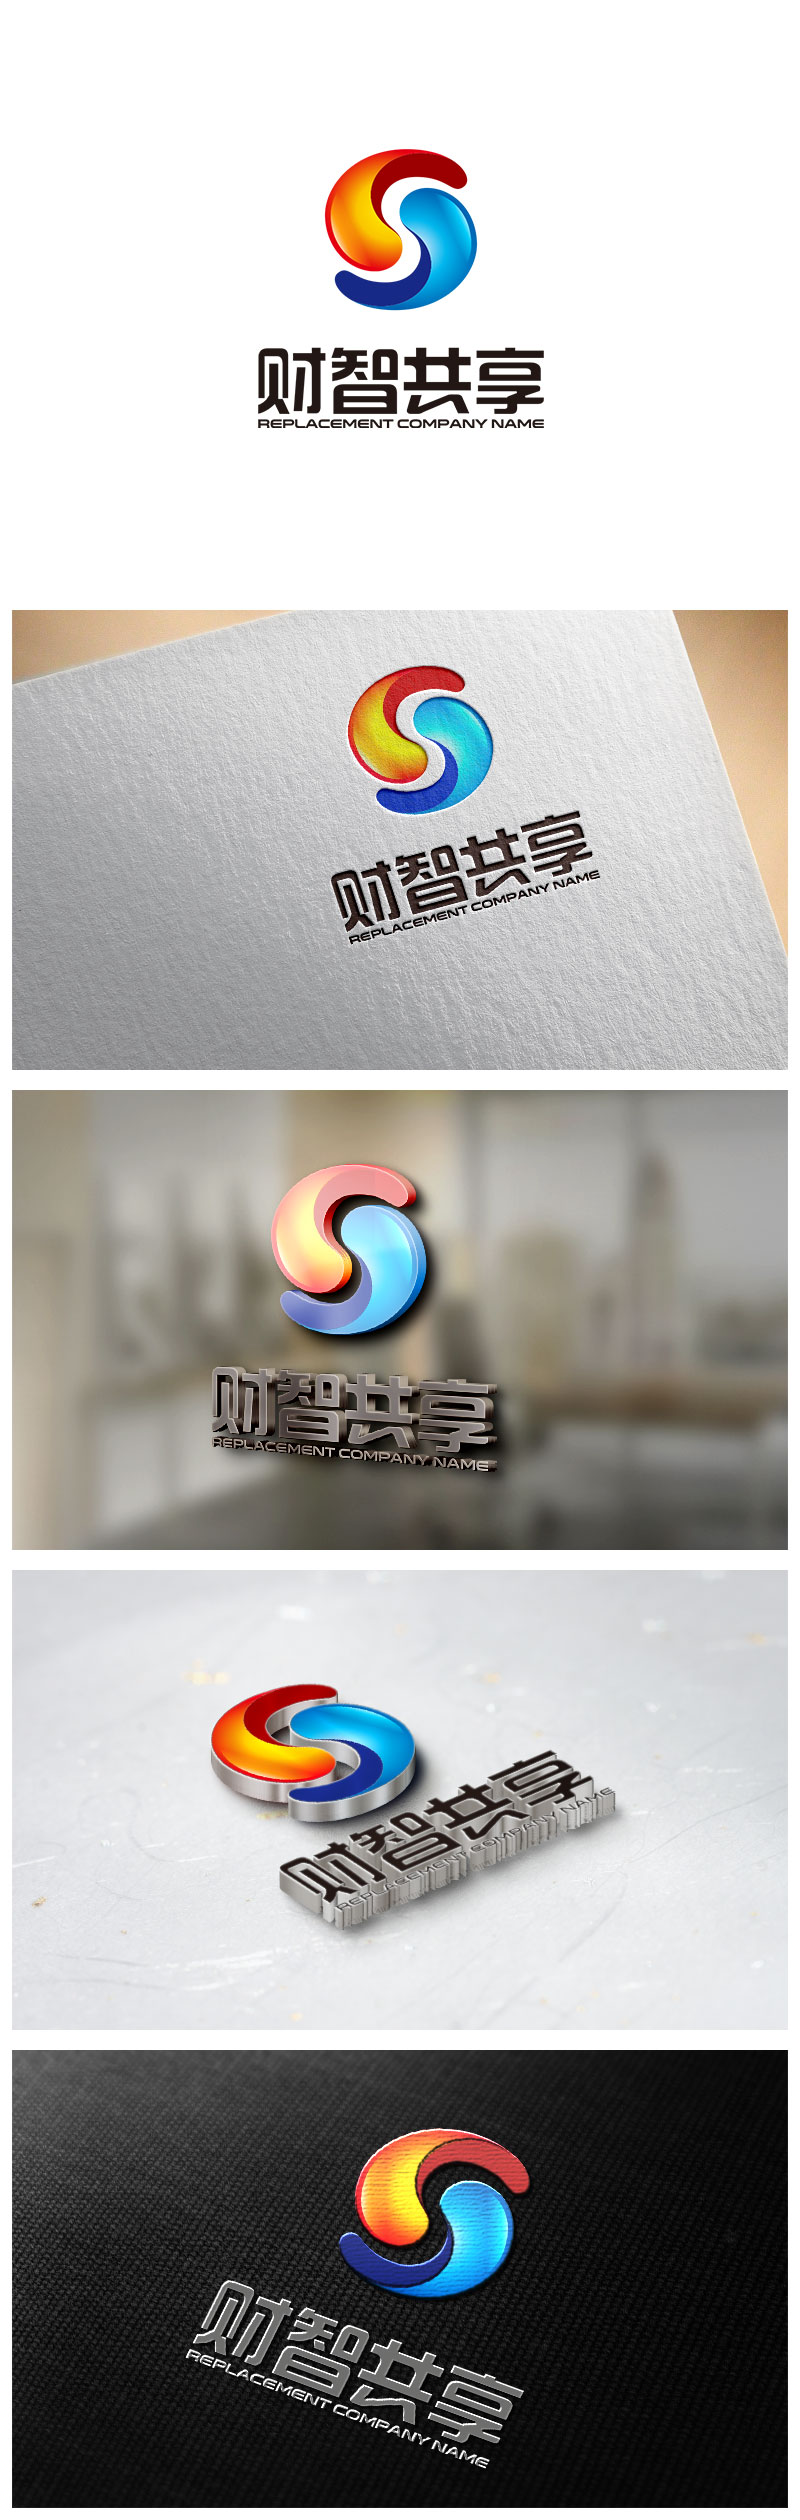 钟炬的财智共享（北京）技术服务有限公司logo设计